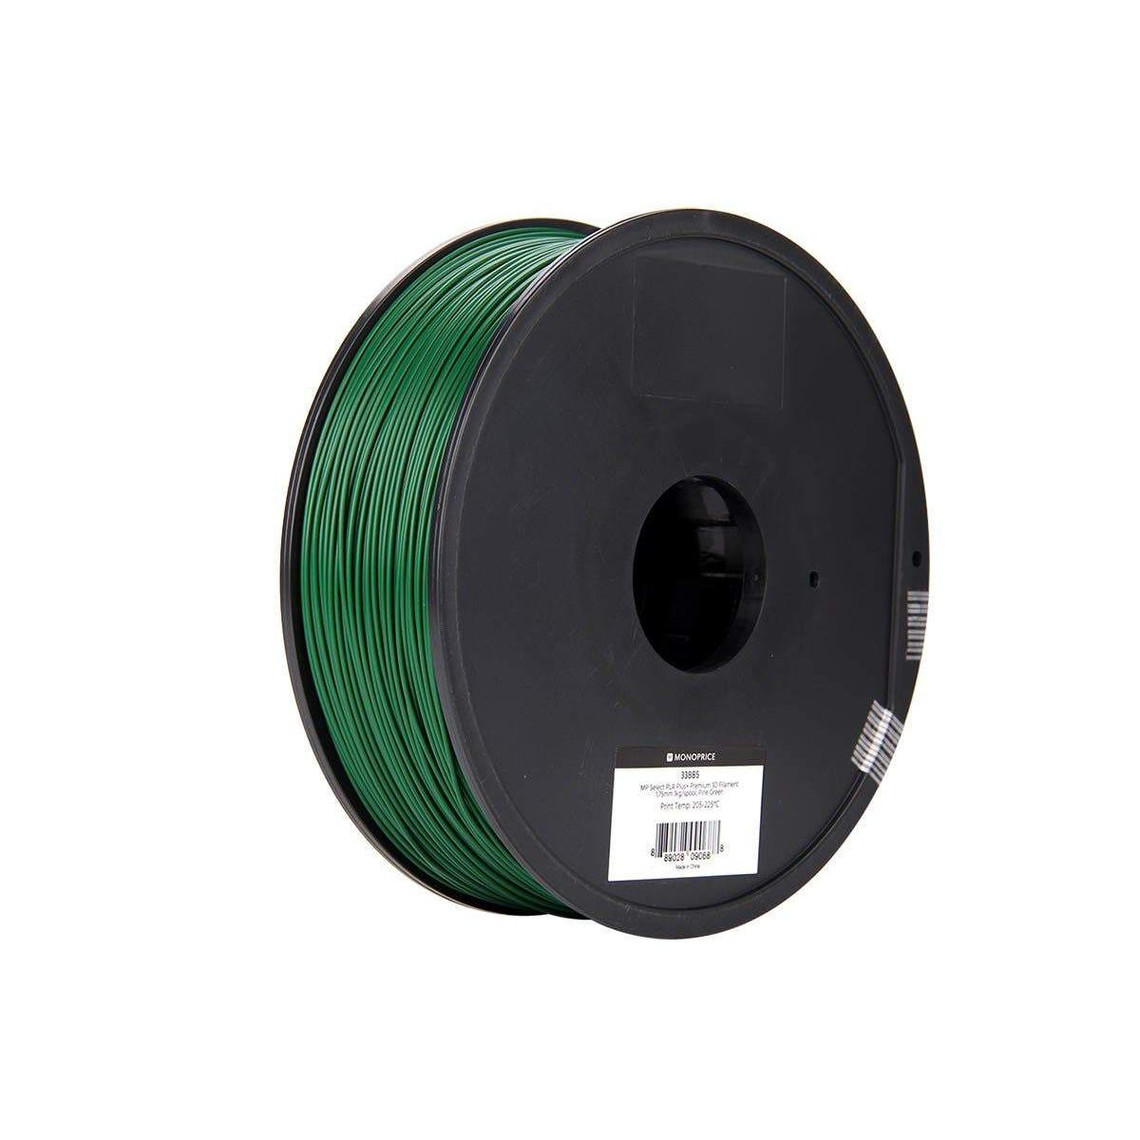 Monoprice Select PLA Plus+ Premium 3D Filament 1.75mm | 1kg/spool | Biodegradable